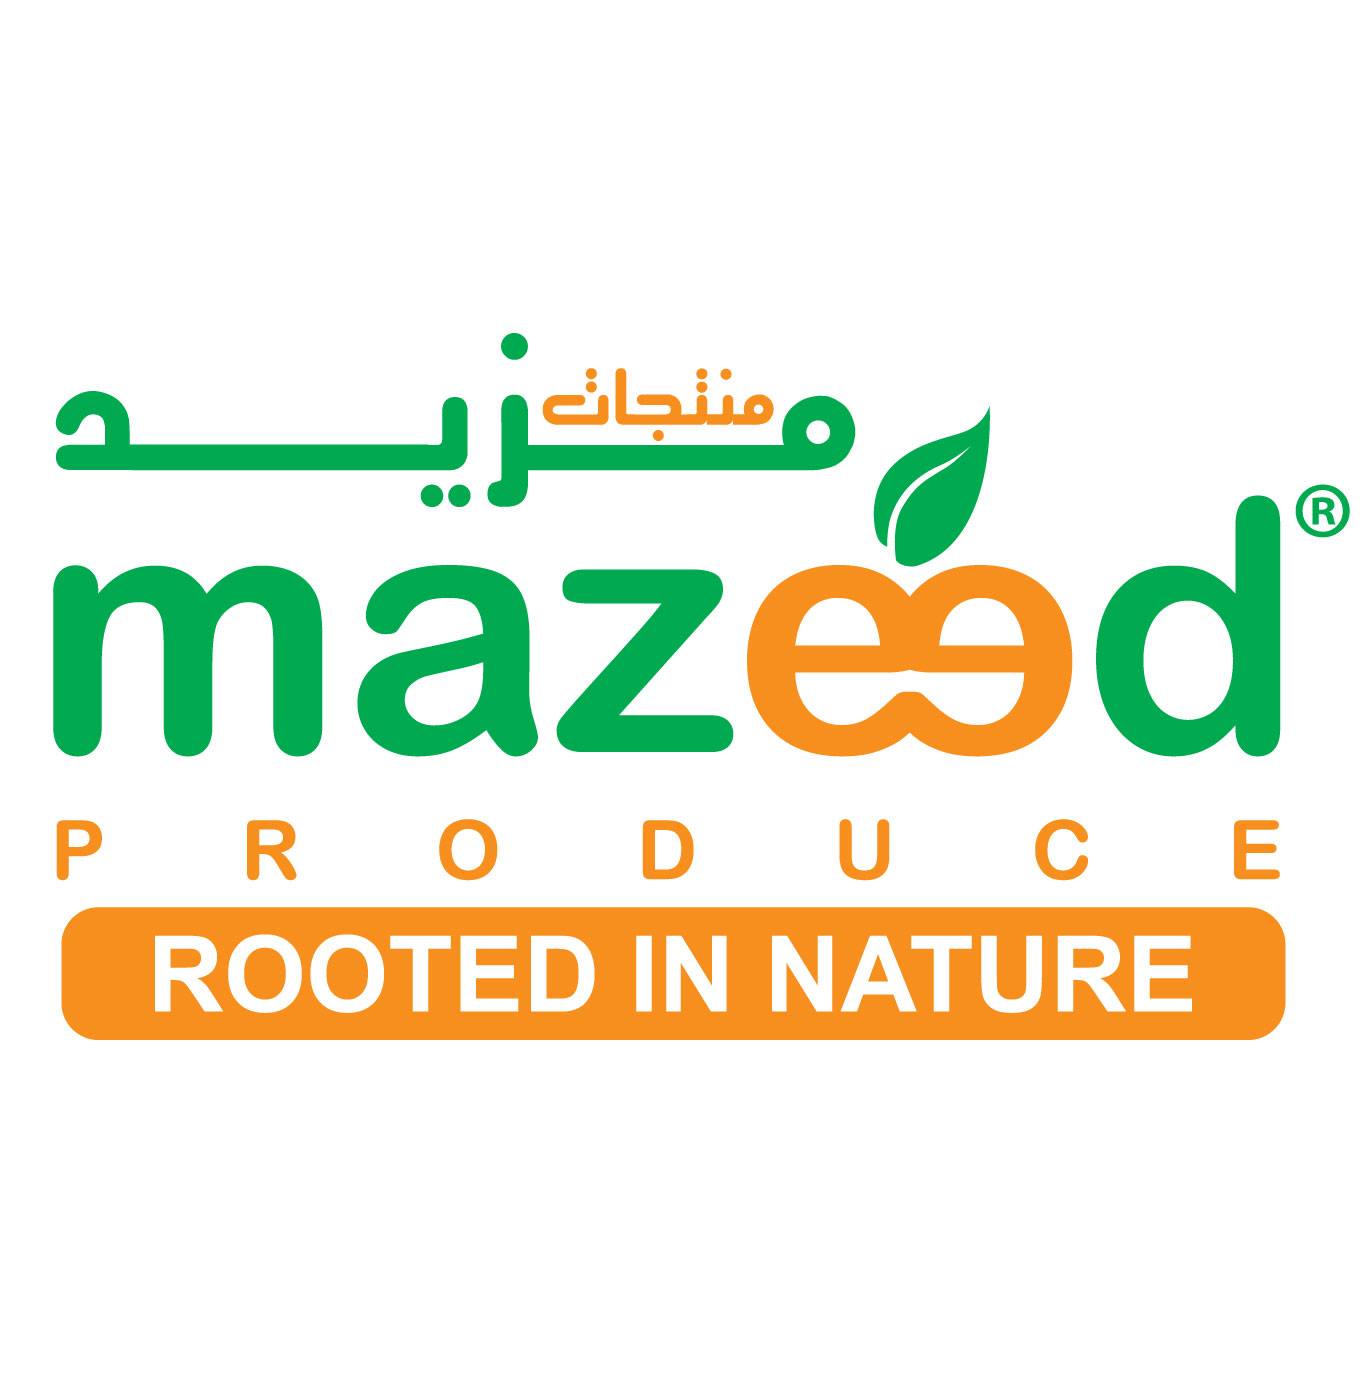 Mazeed